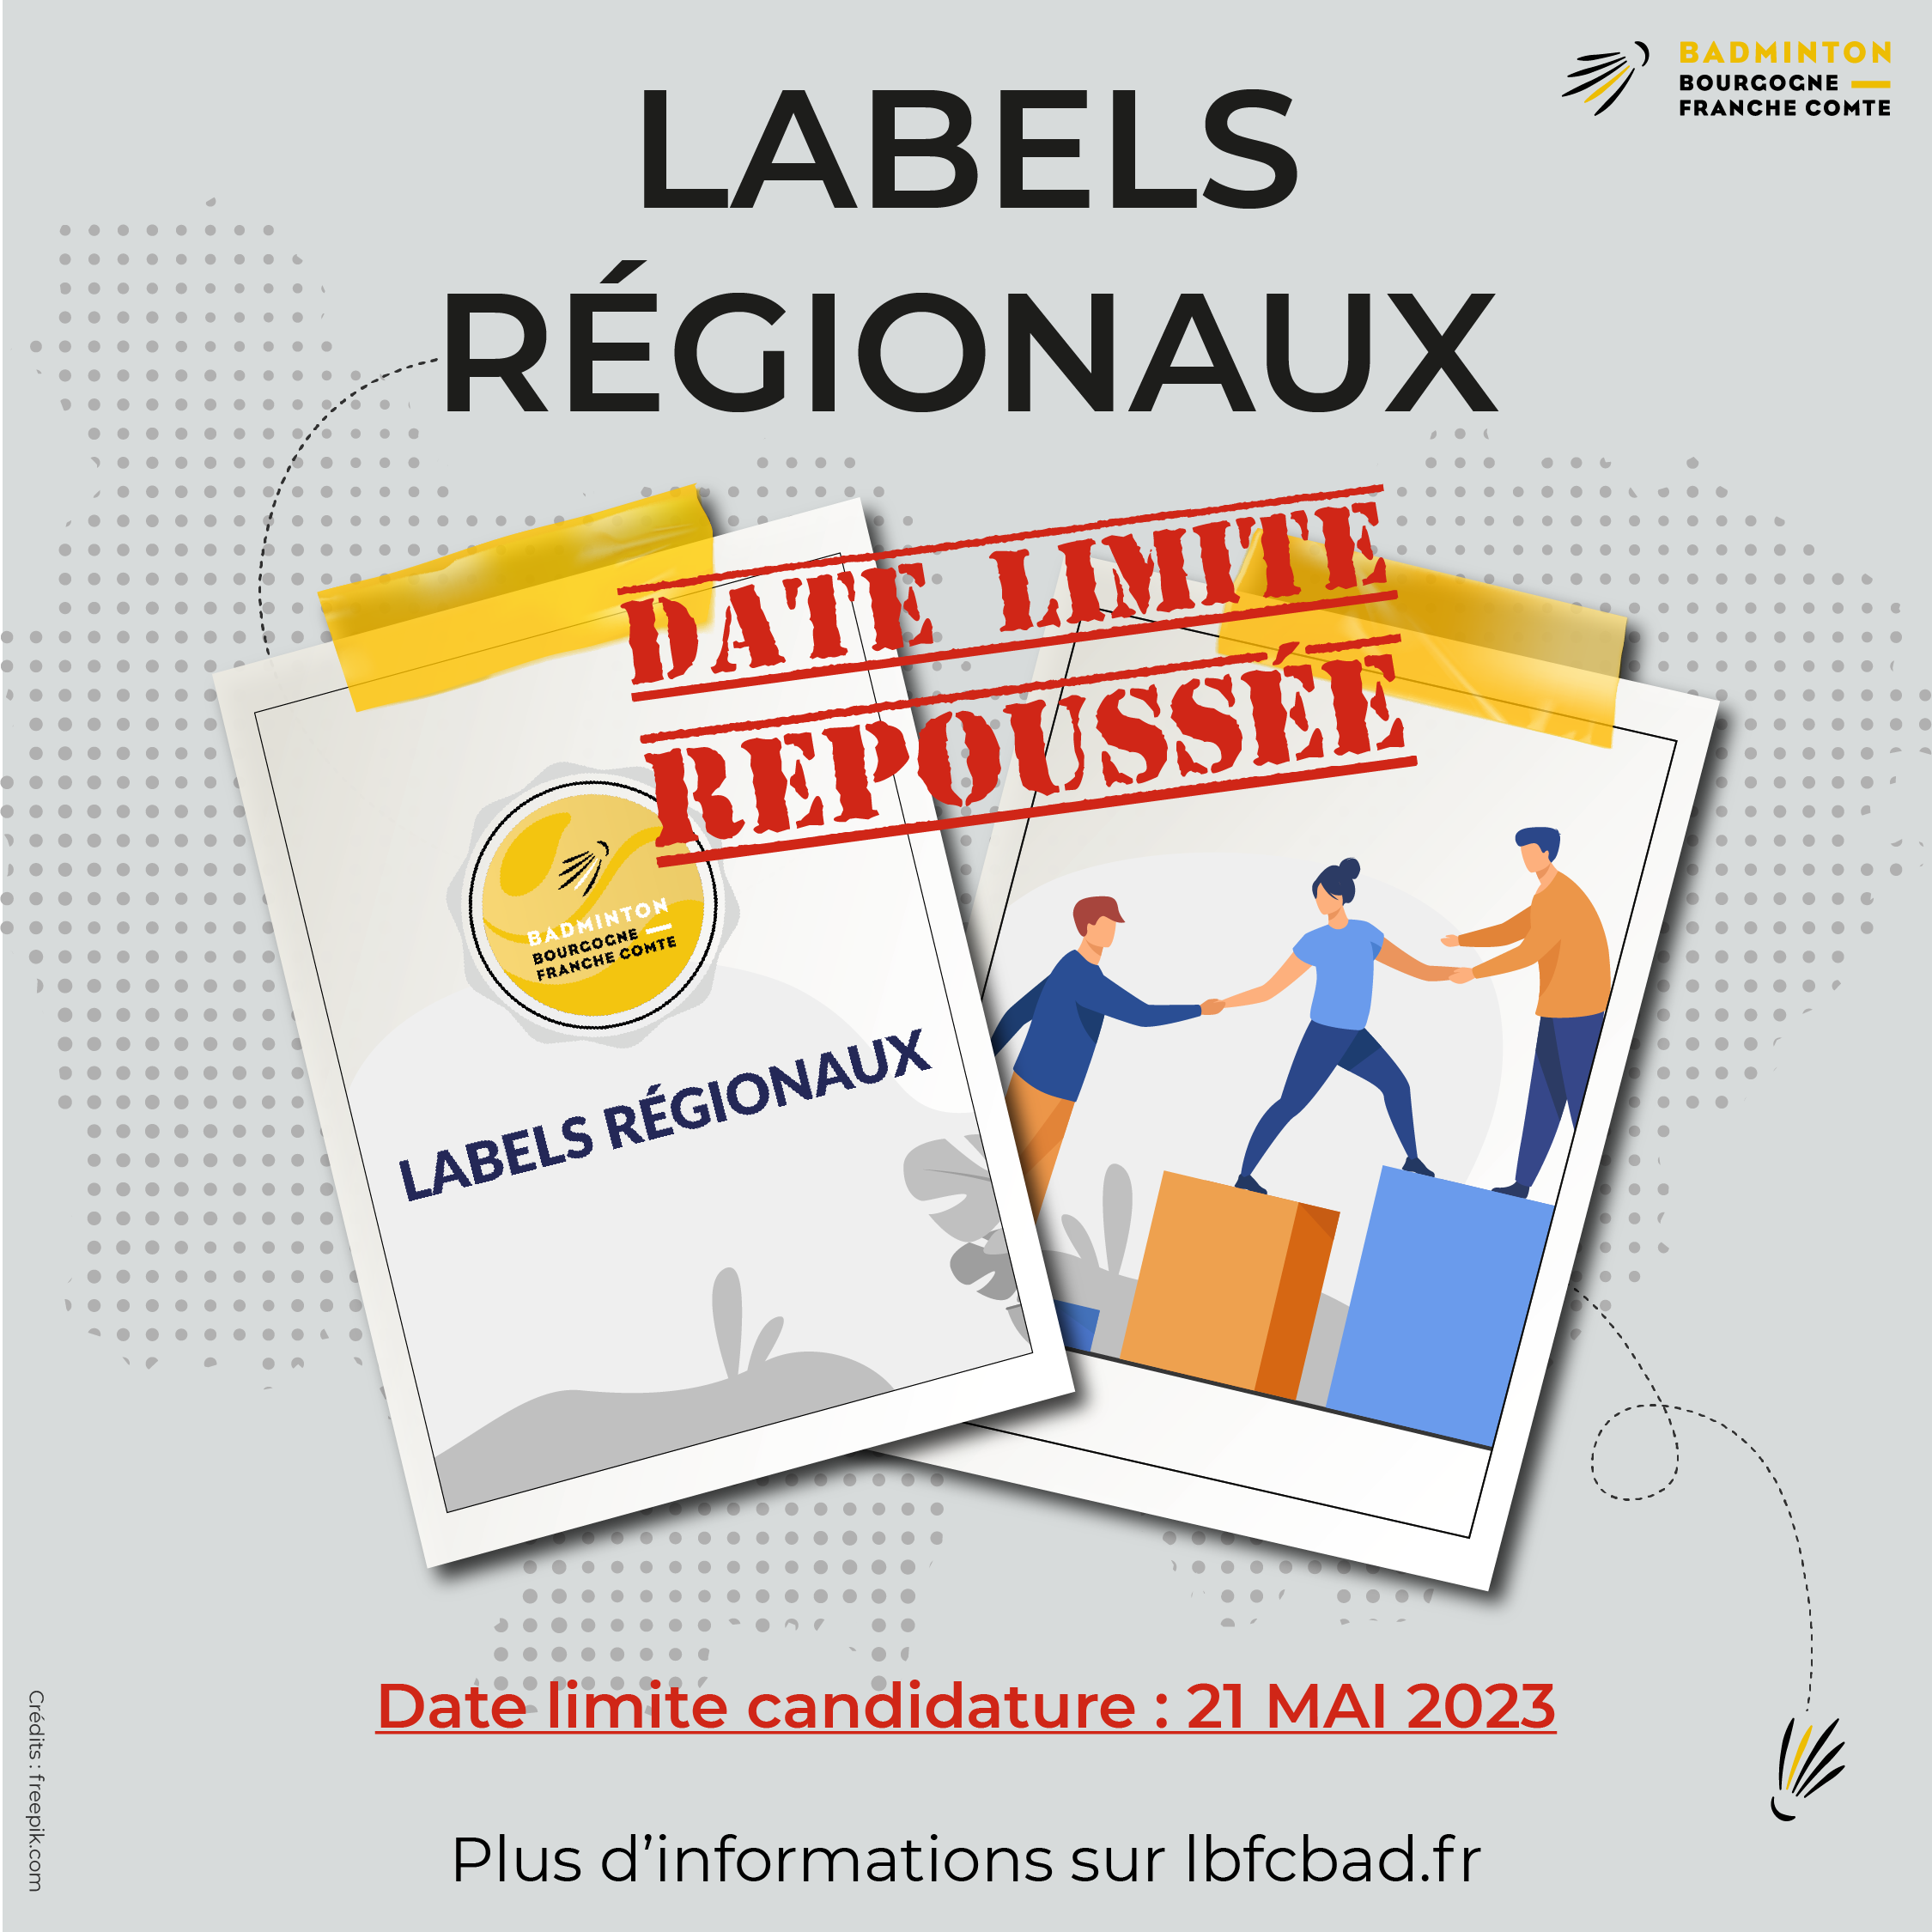 Labels Régionaux date lim repoussée